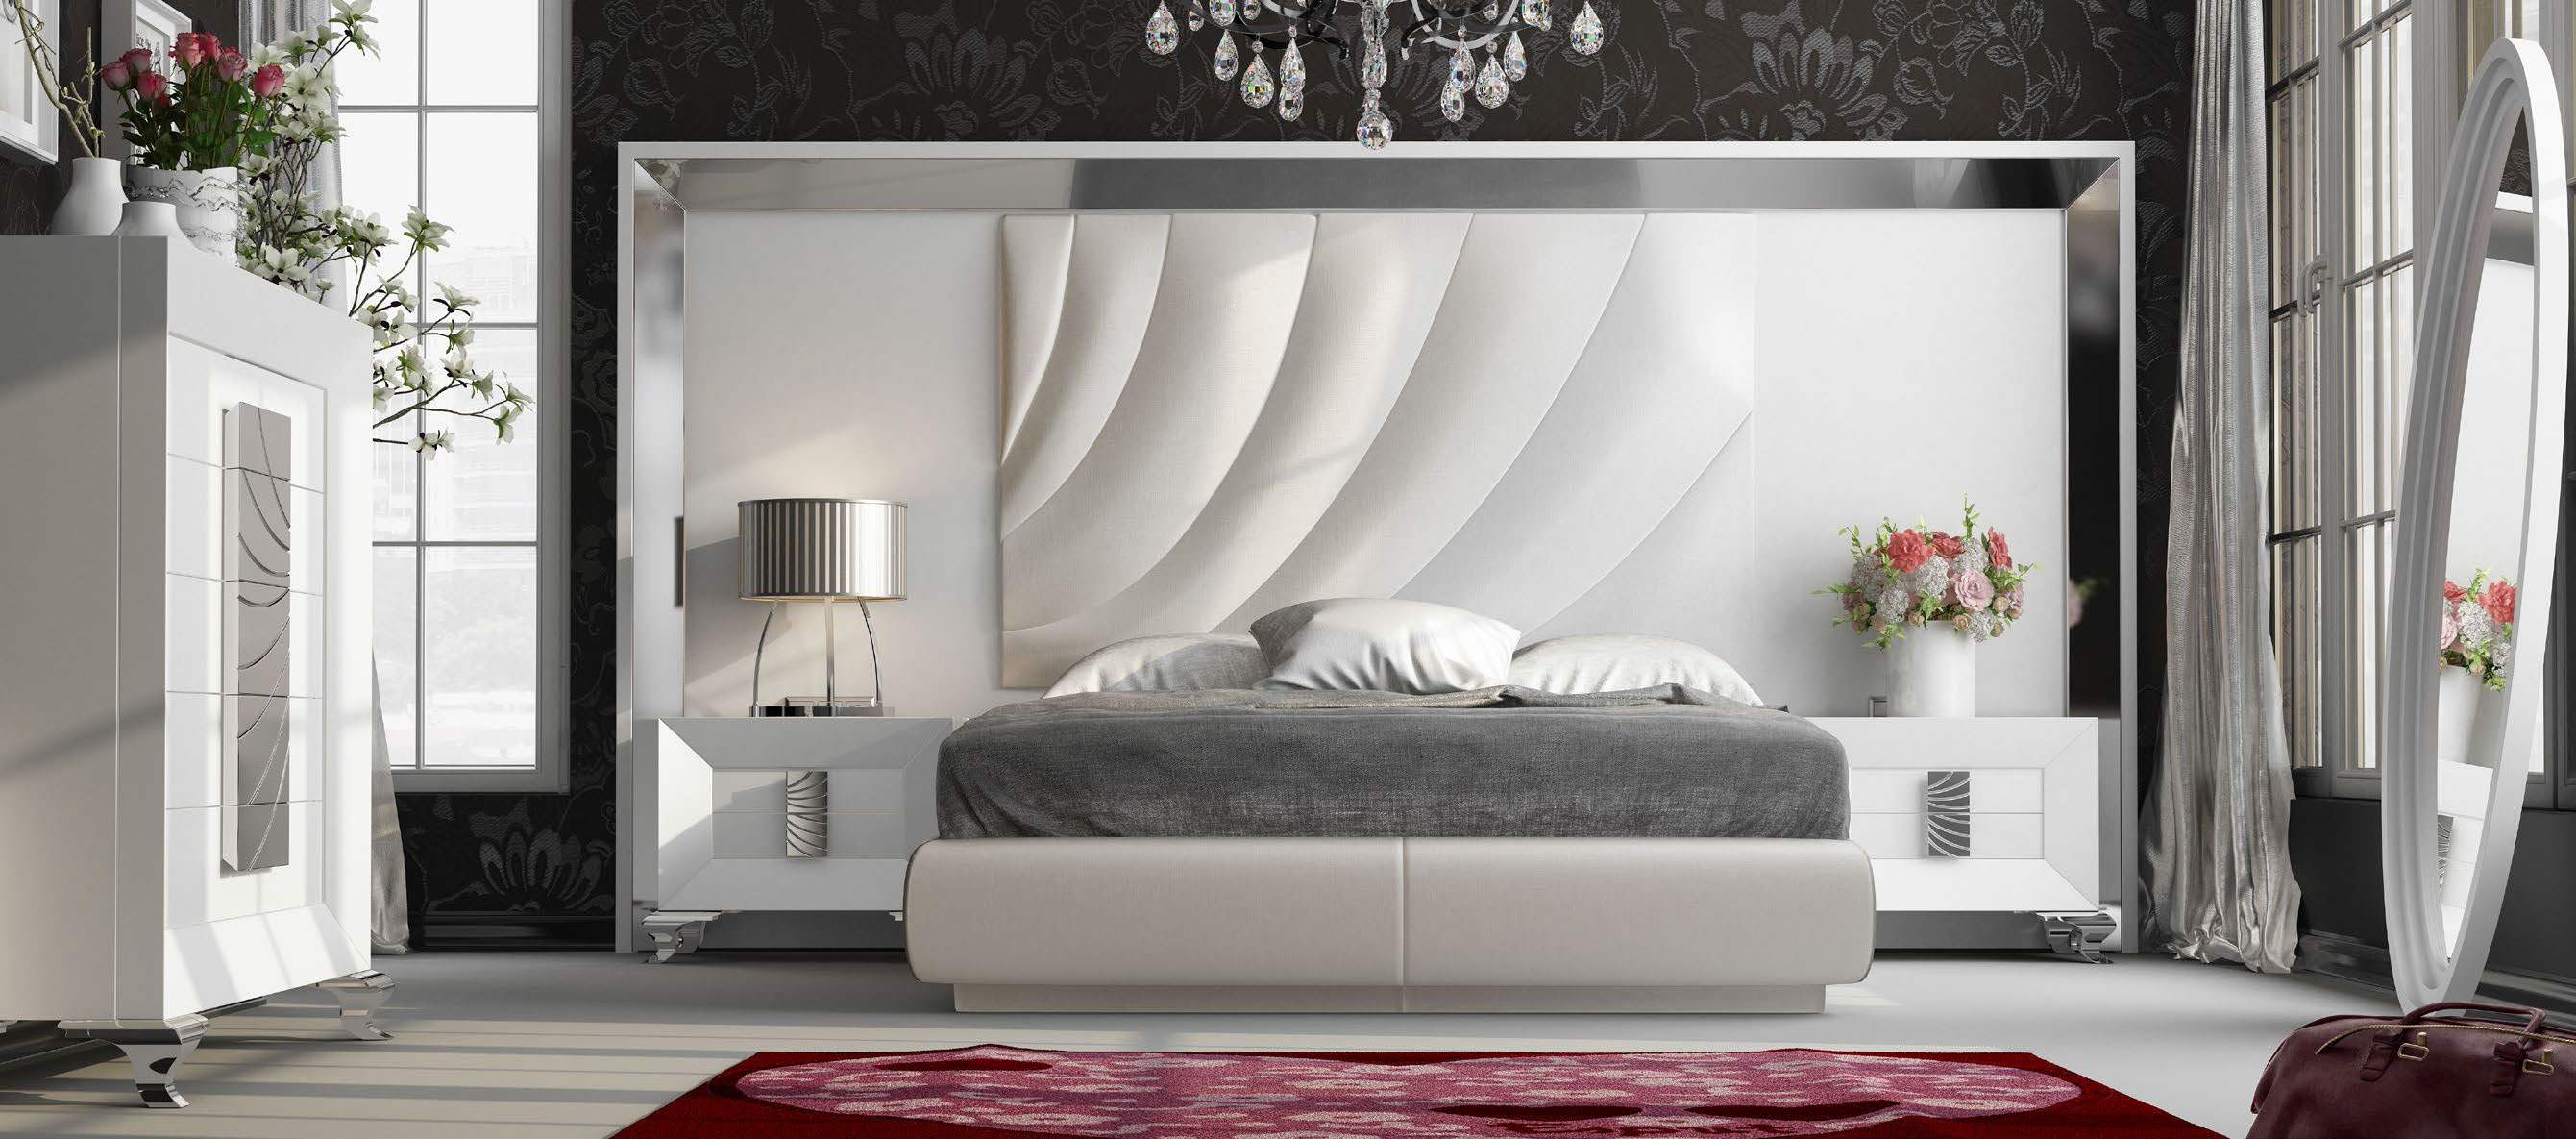 Brands Franco Furniture Avanty Bedrooms, Spain DOR 129